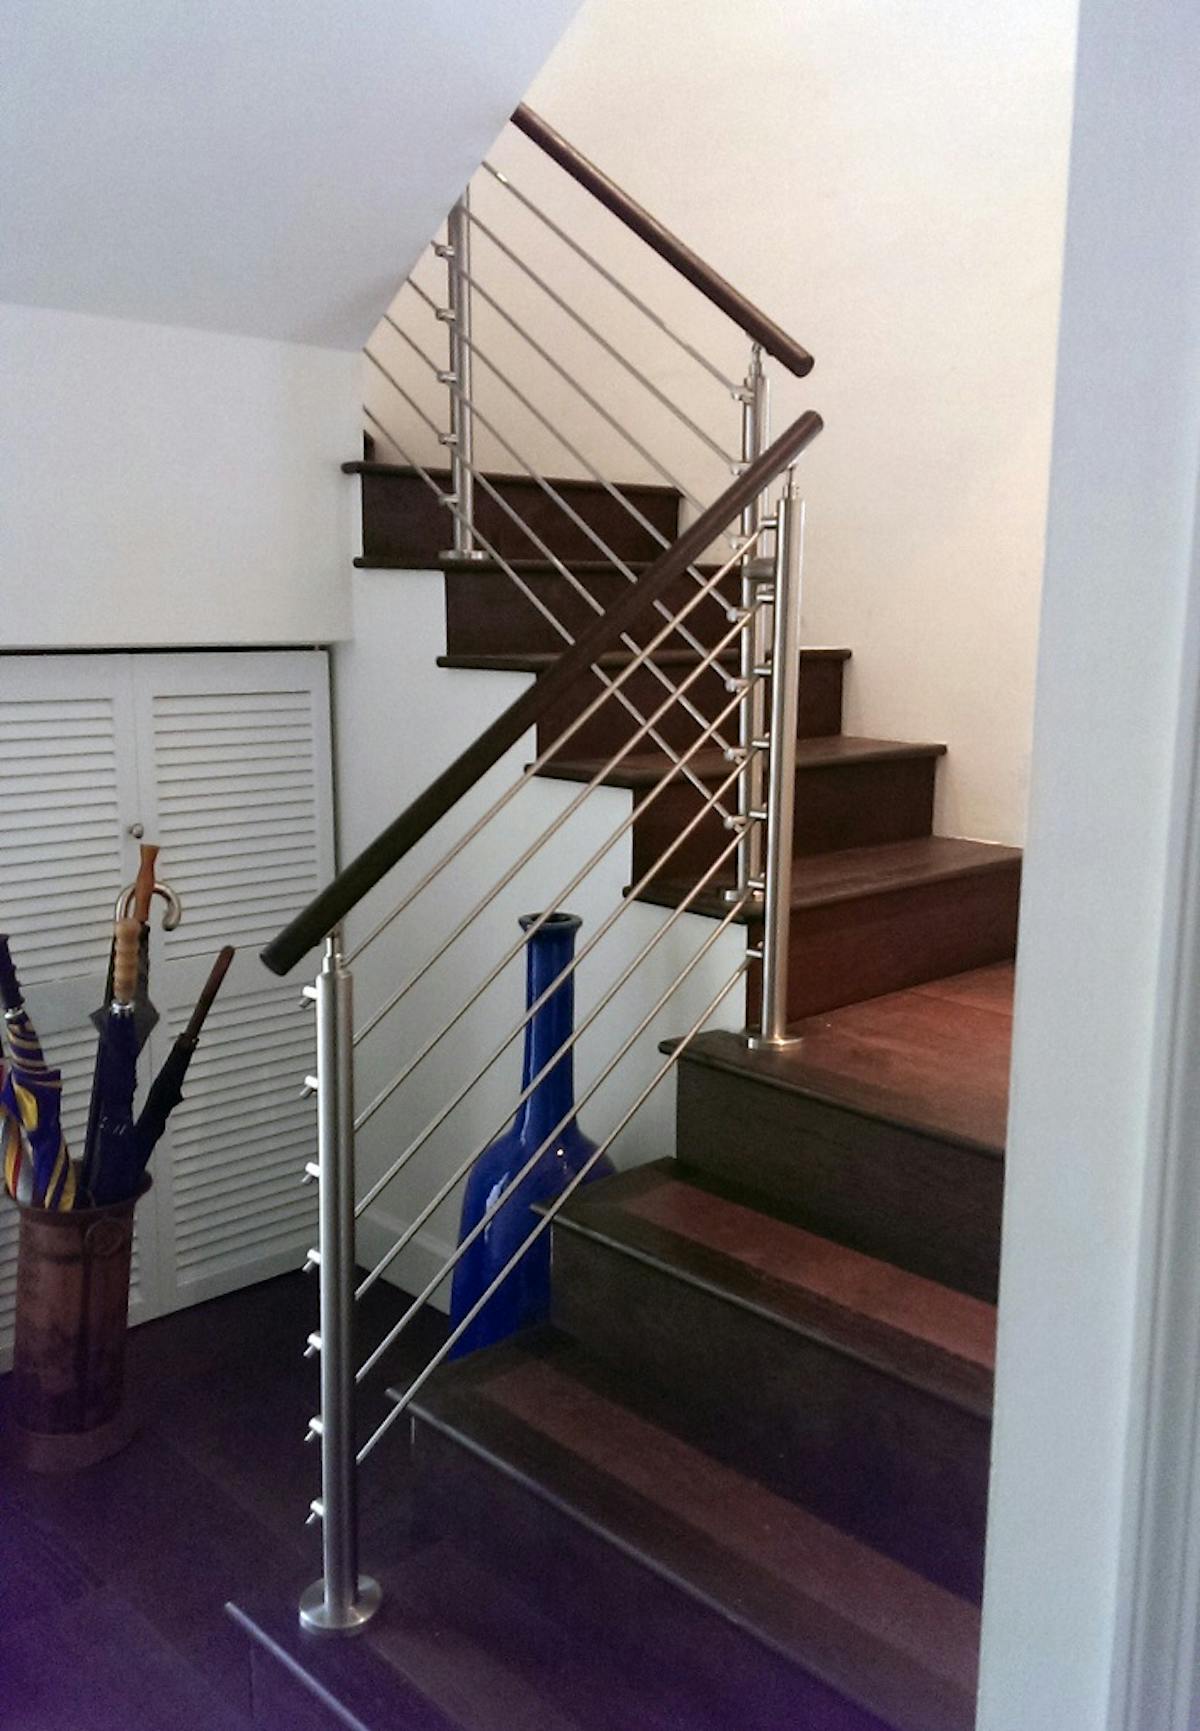 Stainless Steel Rod Railings & Wood Handrail Bella Stairs, LLC